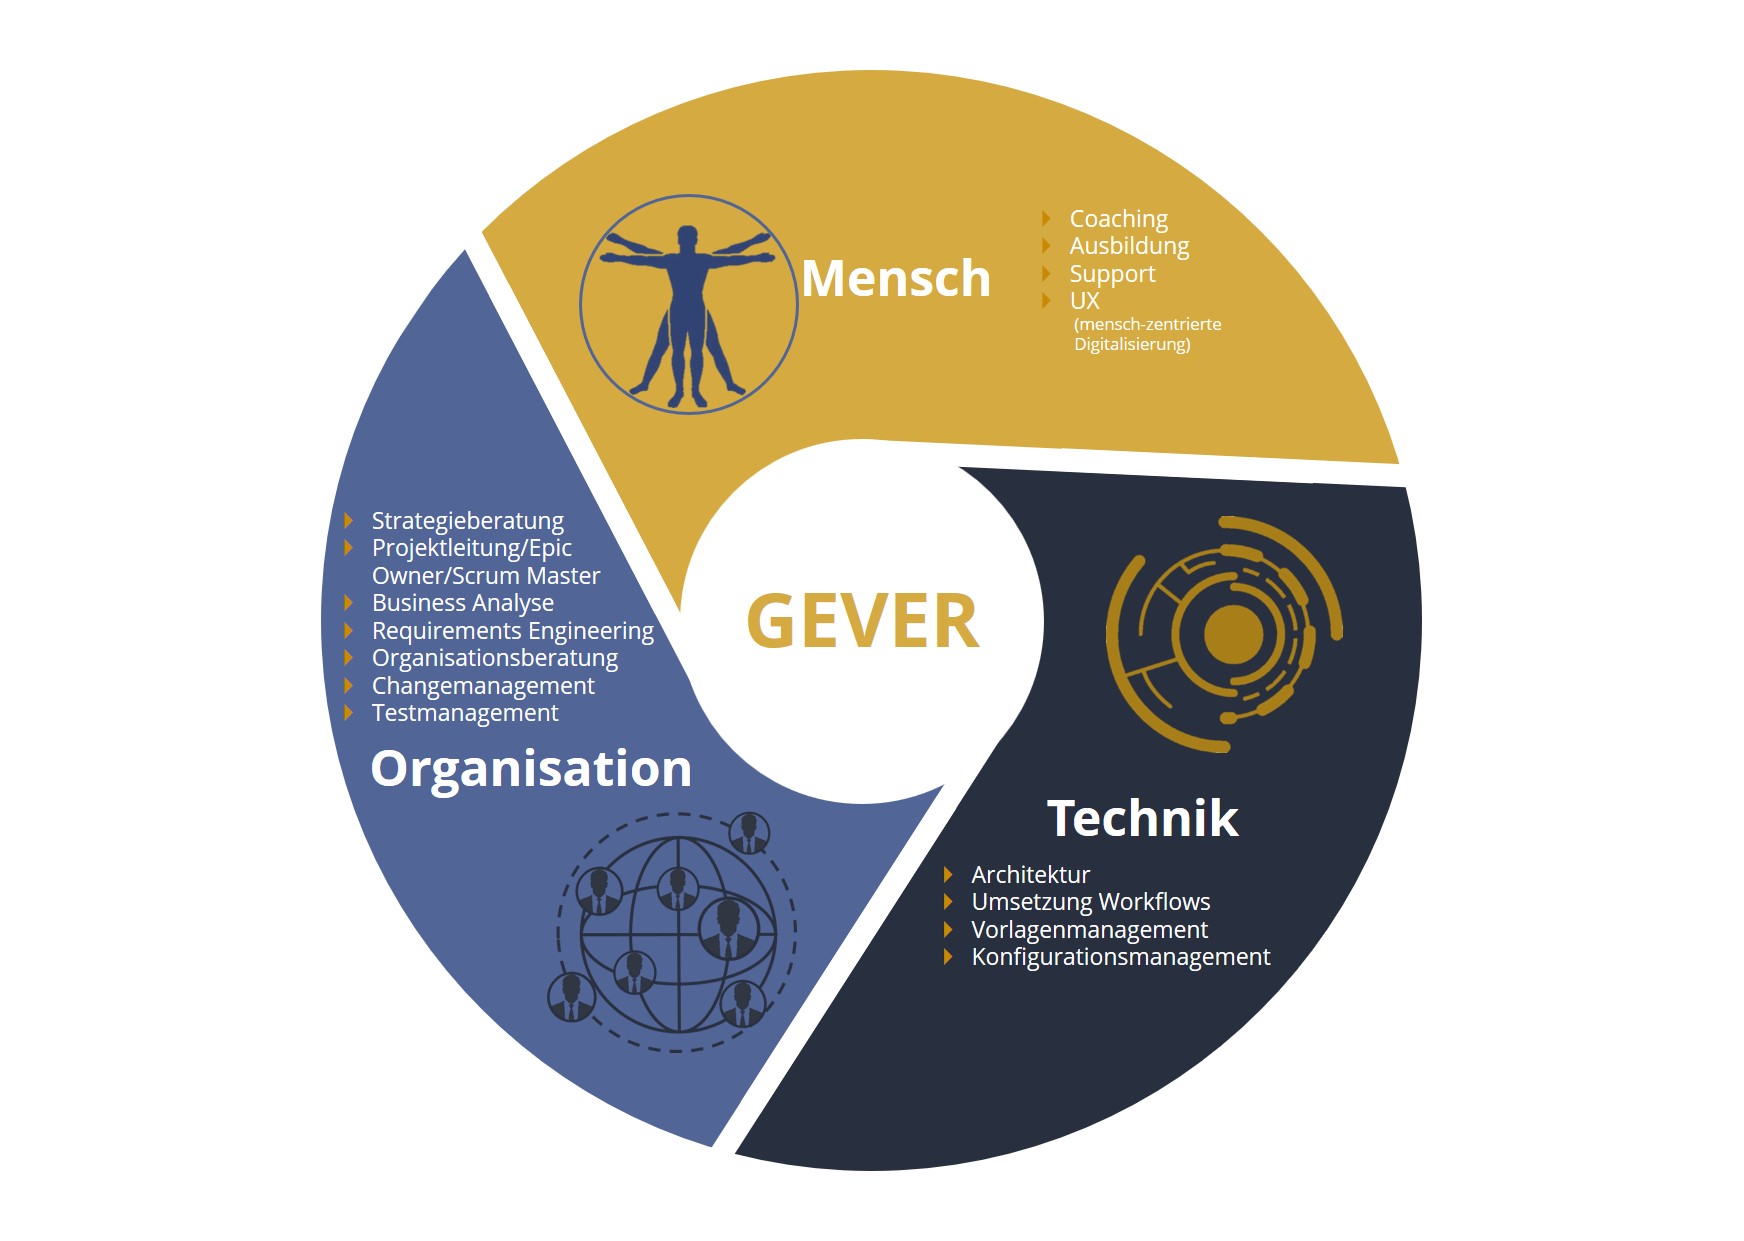 Darstellung des GEVER Kreislaufs Mensch, Organisation und Technik